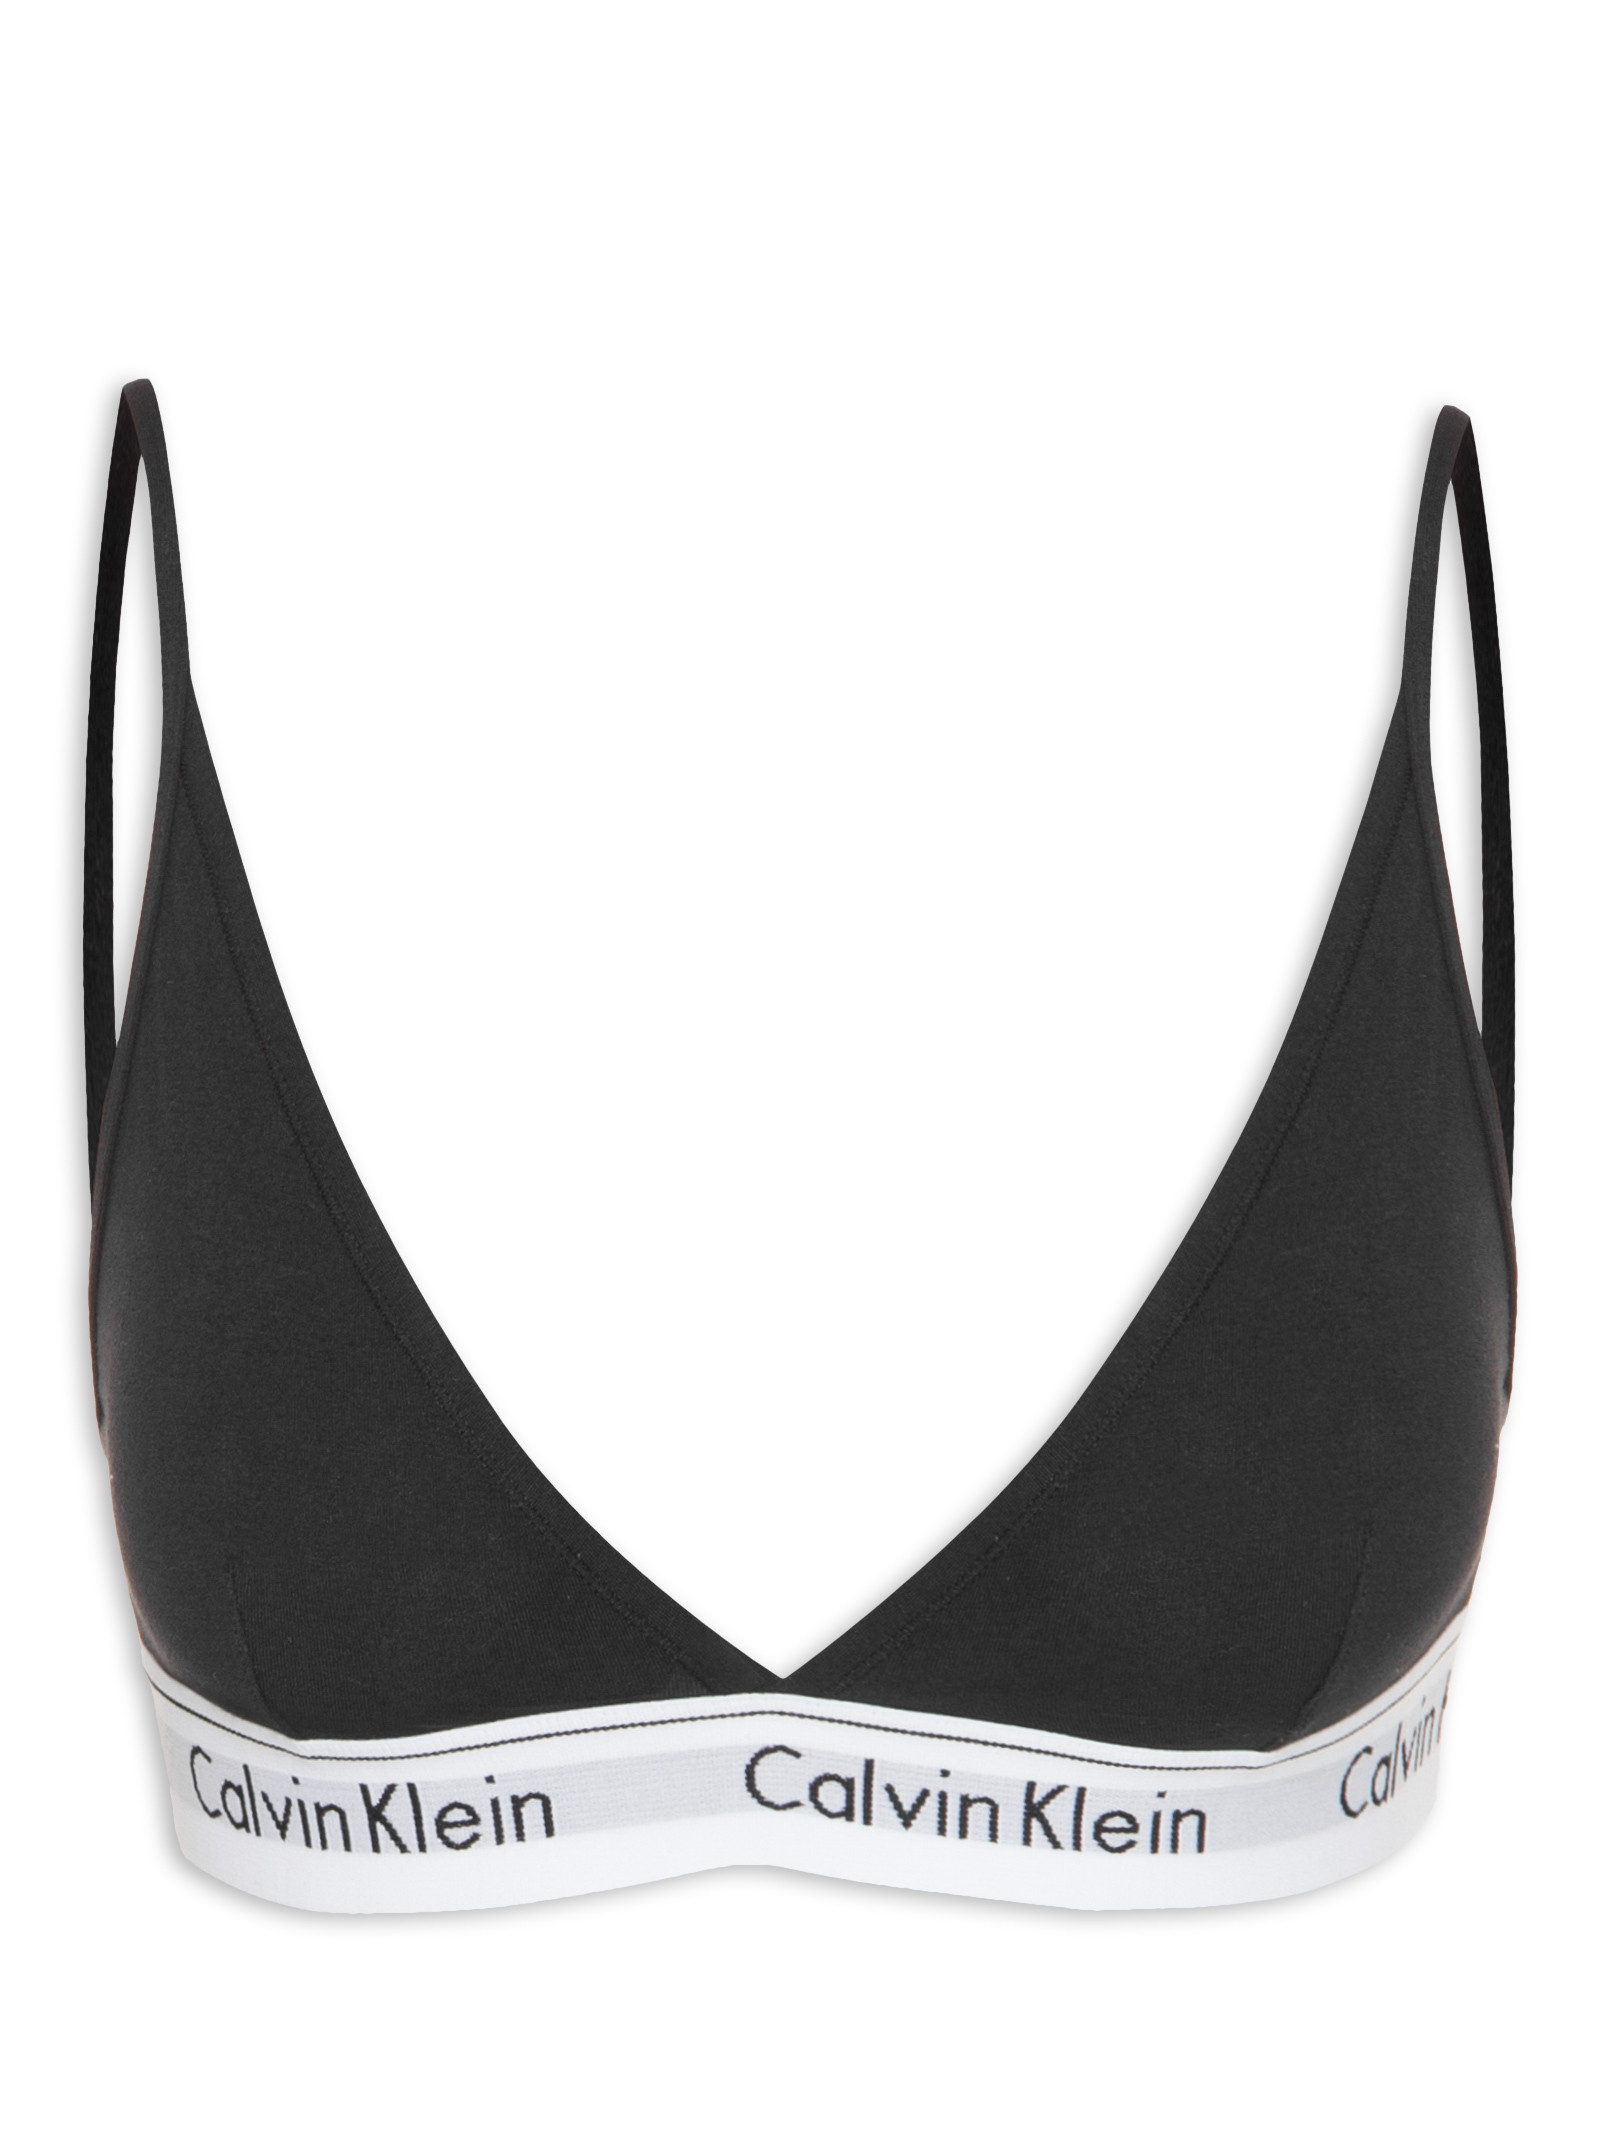 Top Nadador Modern Cotton - Calvin Klein Underwear - Cinza - Shop2gether